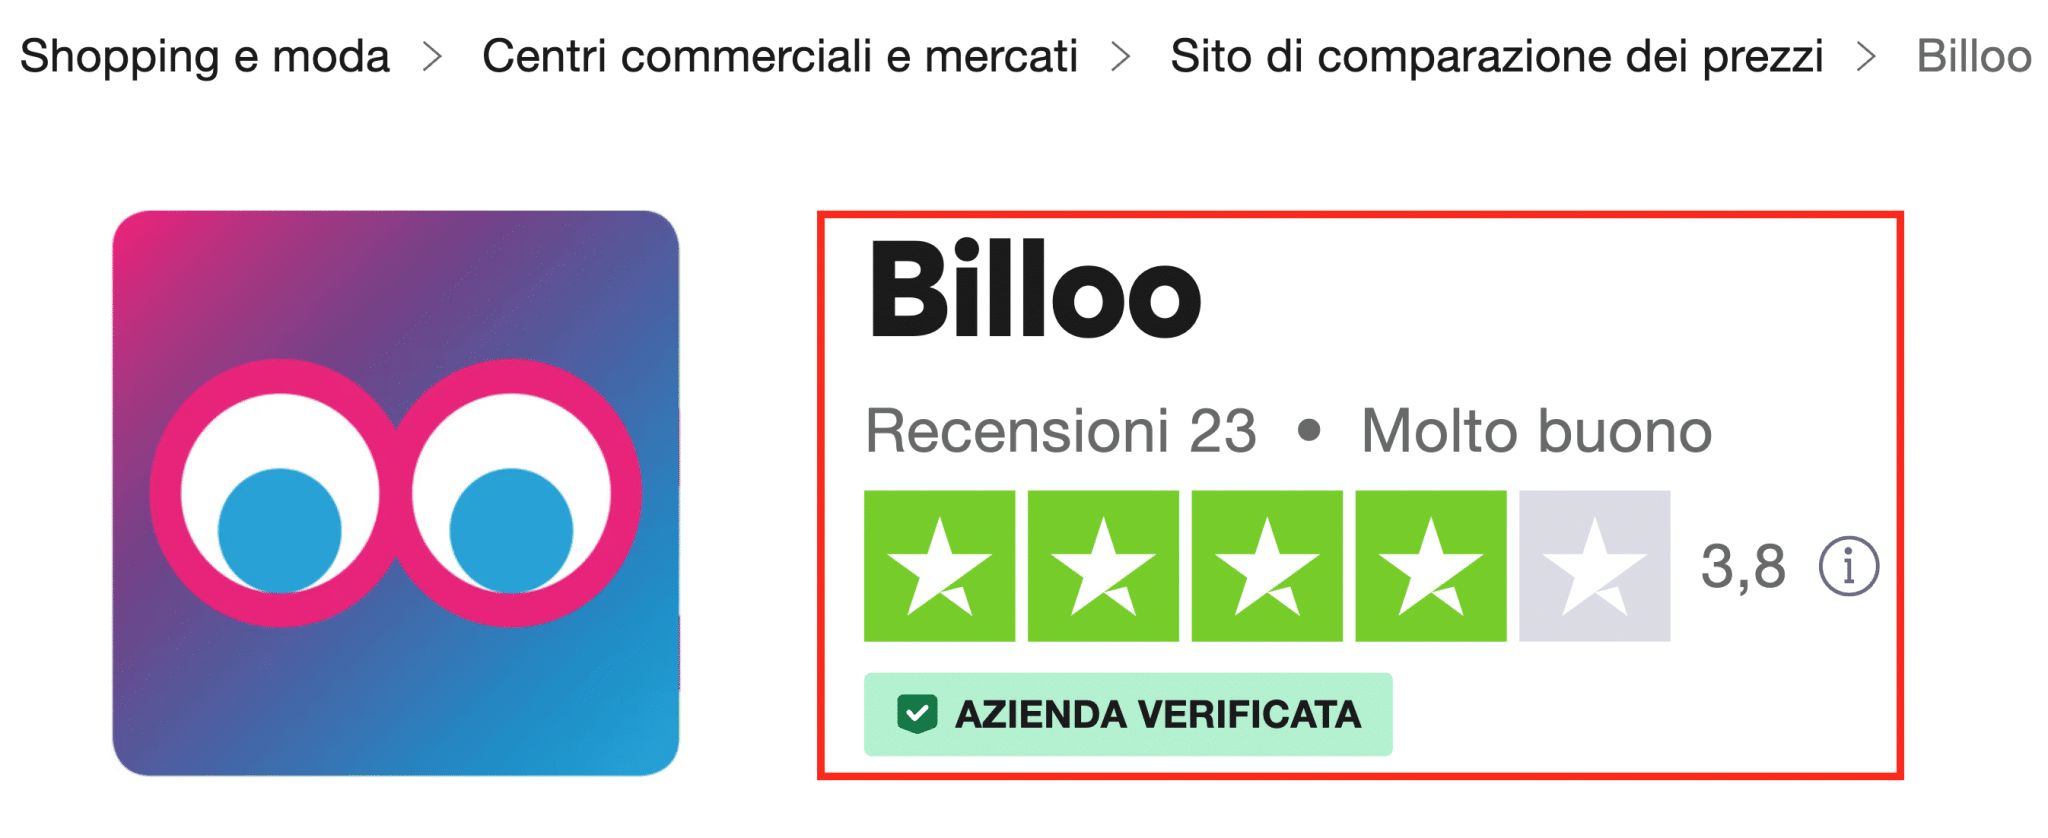 Le recensioni di Billoo sono molto buone secondo Trustpilot